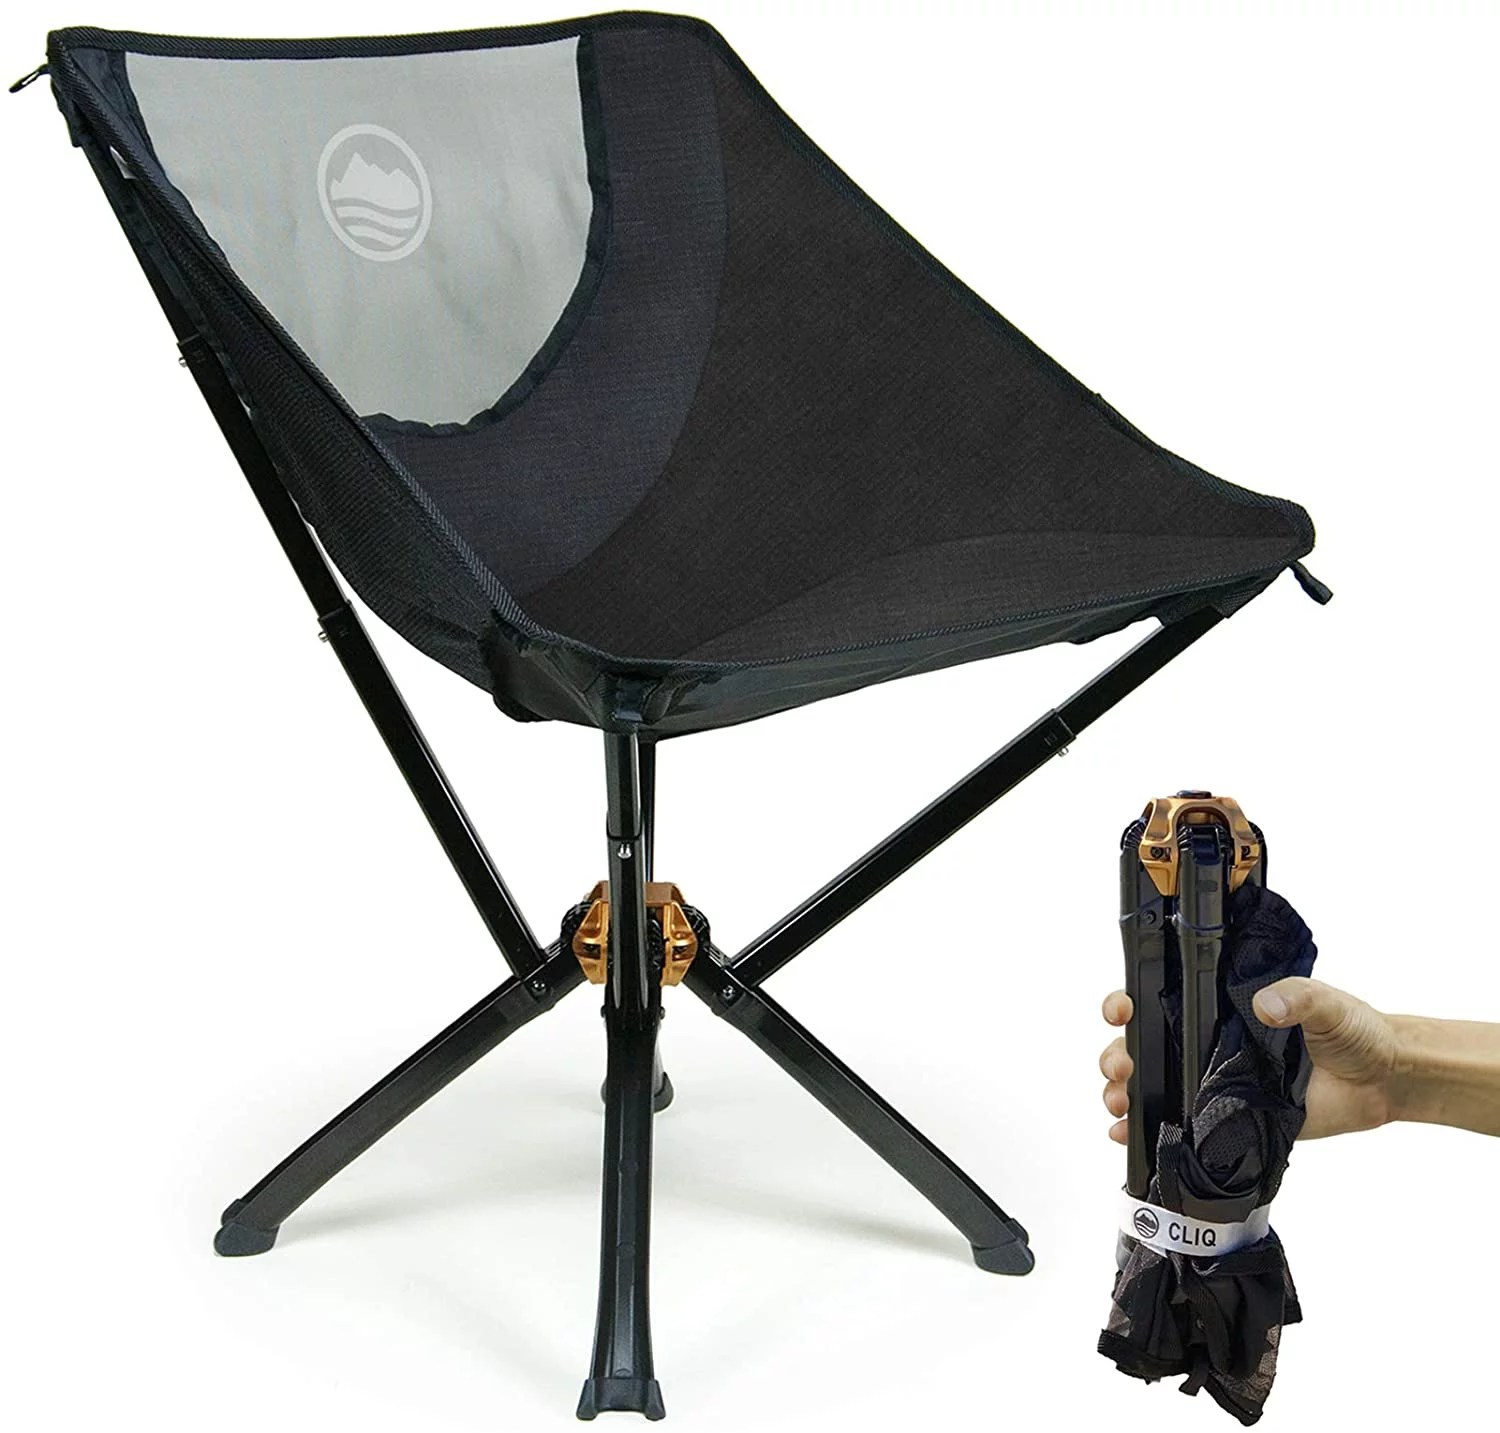 CLIQ Camping Chair, best beach chairs